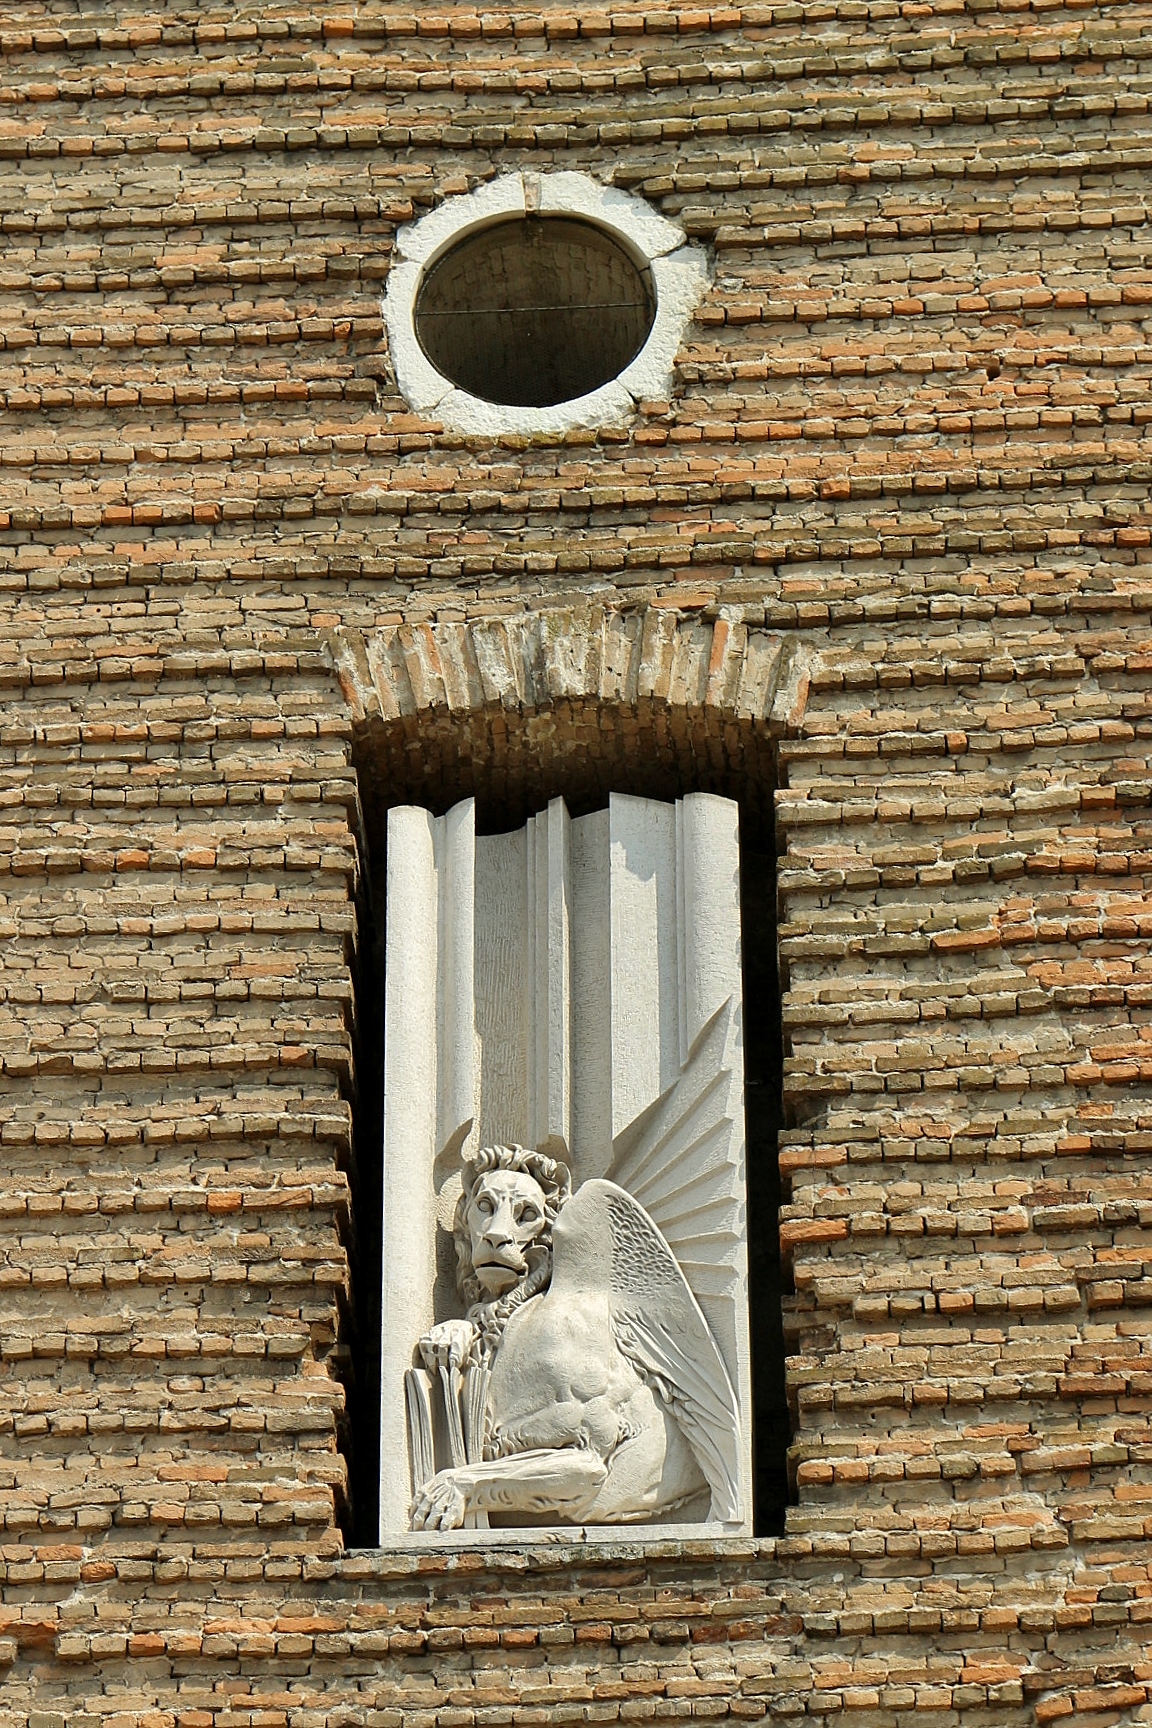 Foto: Abadía de Santa Giustina - Padua (Veneto), Italia